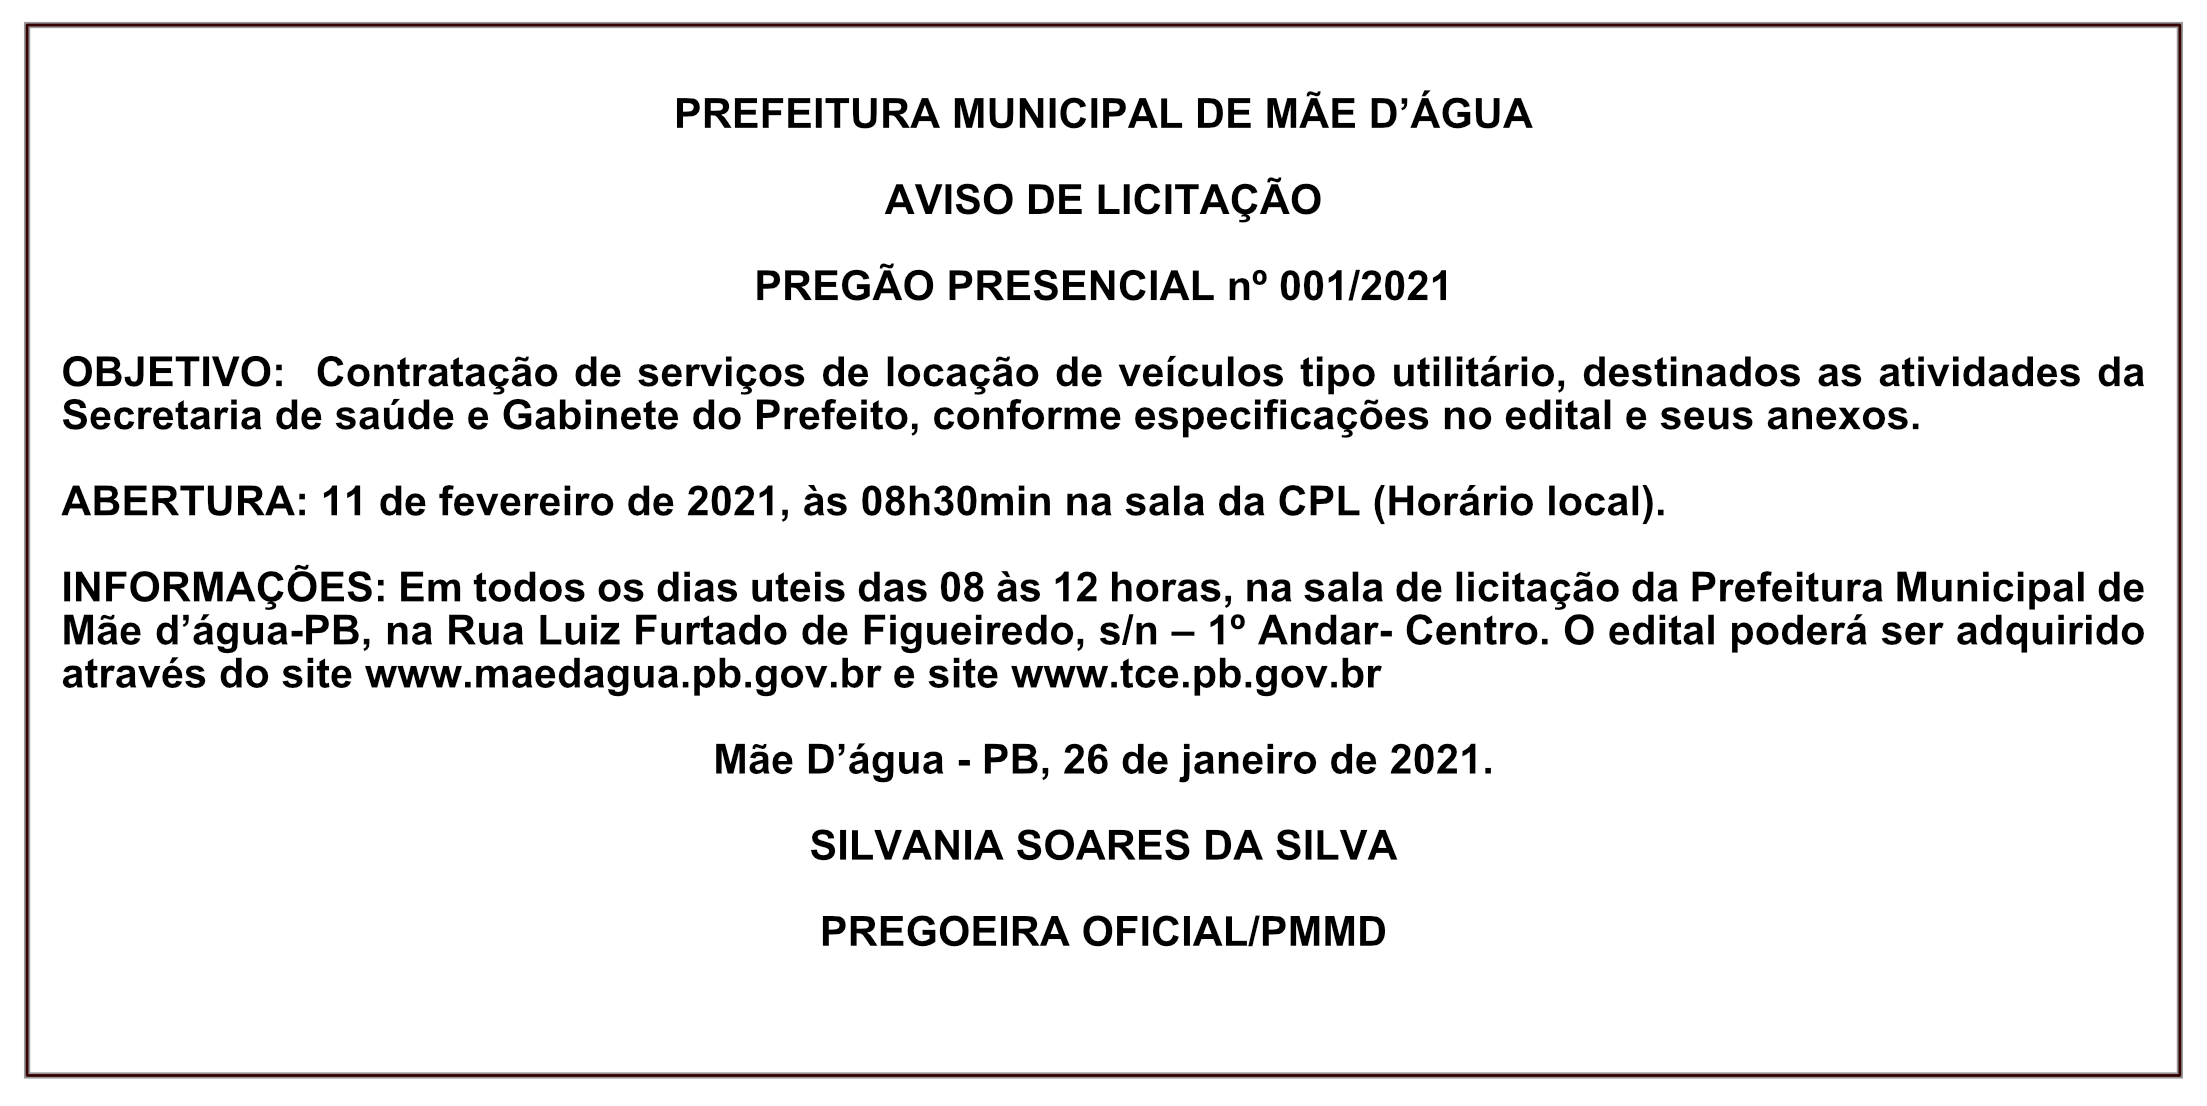 PREFEITURA MUNICIPAL DE MÃE D’ÁGUA – AVISO DE LICITAÇÃO – PREGÃO PRESENCIAL Nº 001/2021